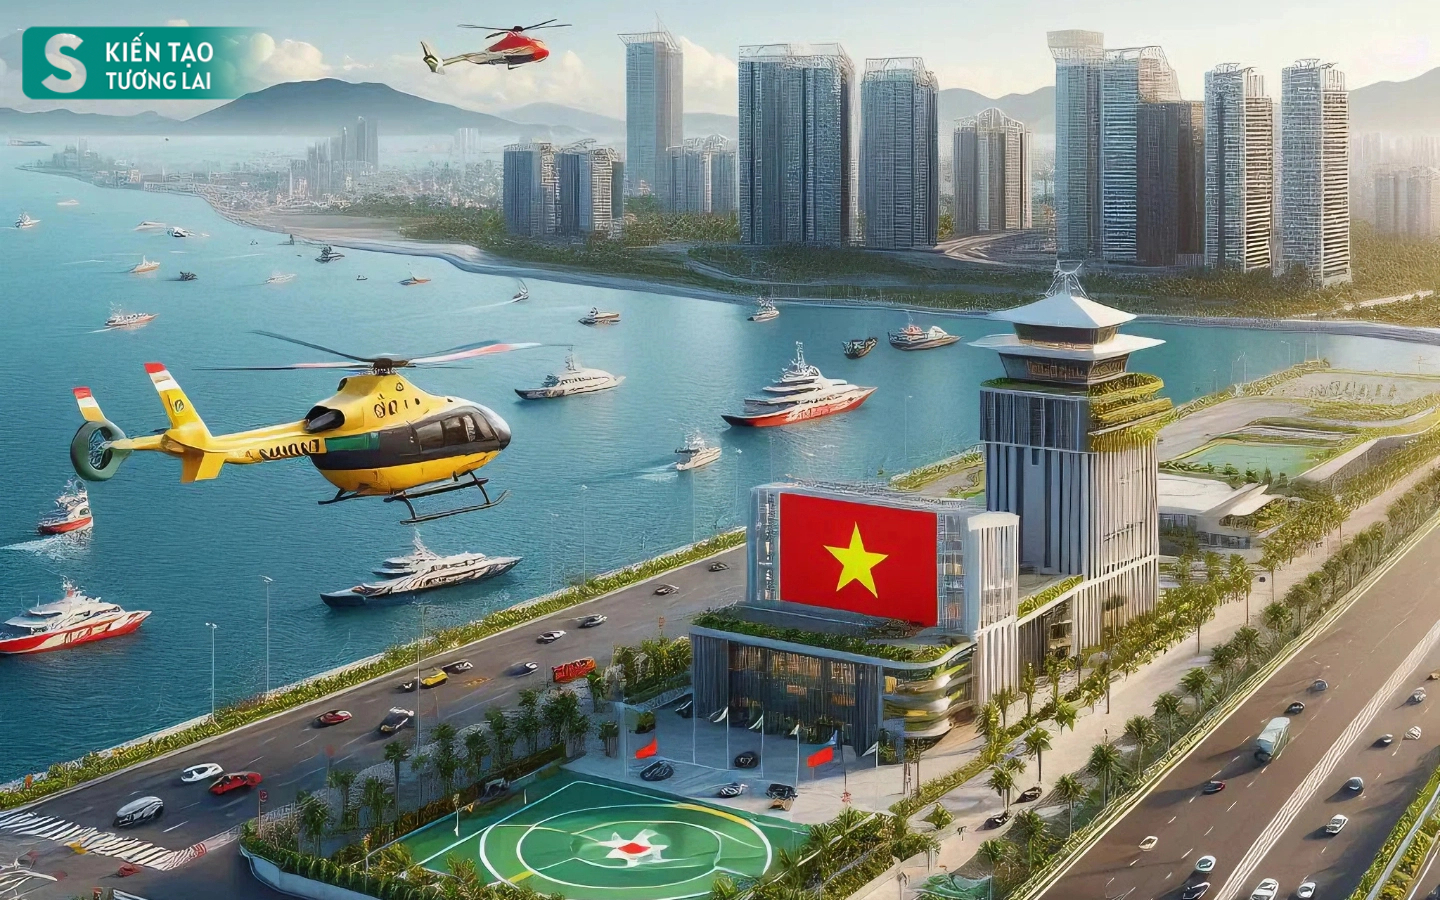 Thành phố duy nhất ở Việt Nam giáp Trung Quốc có biển, tương lai có sân bay taxi, đường sắt hiện đại